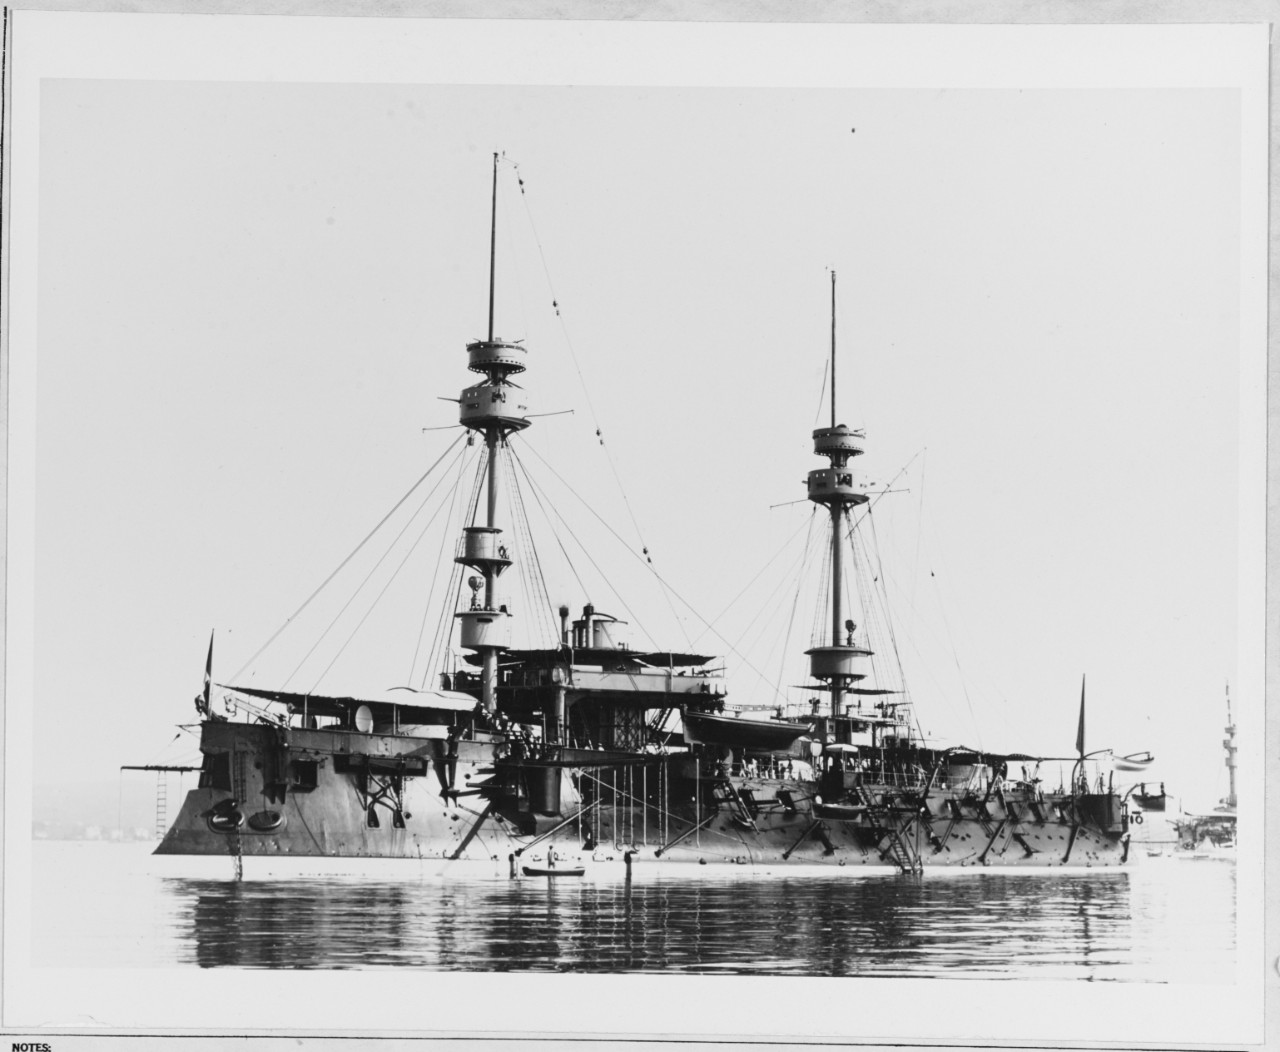 AMIRAL BAUDIN (French battleship, 1883)